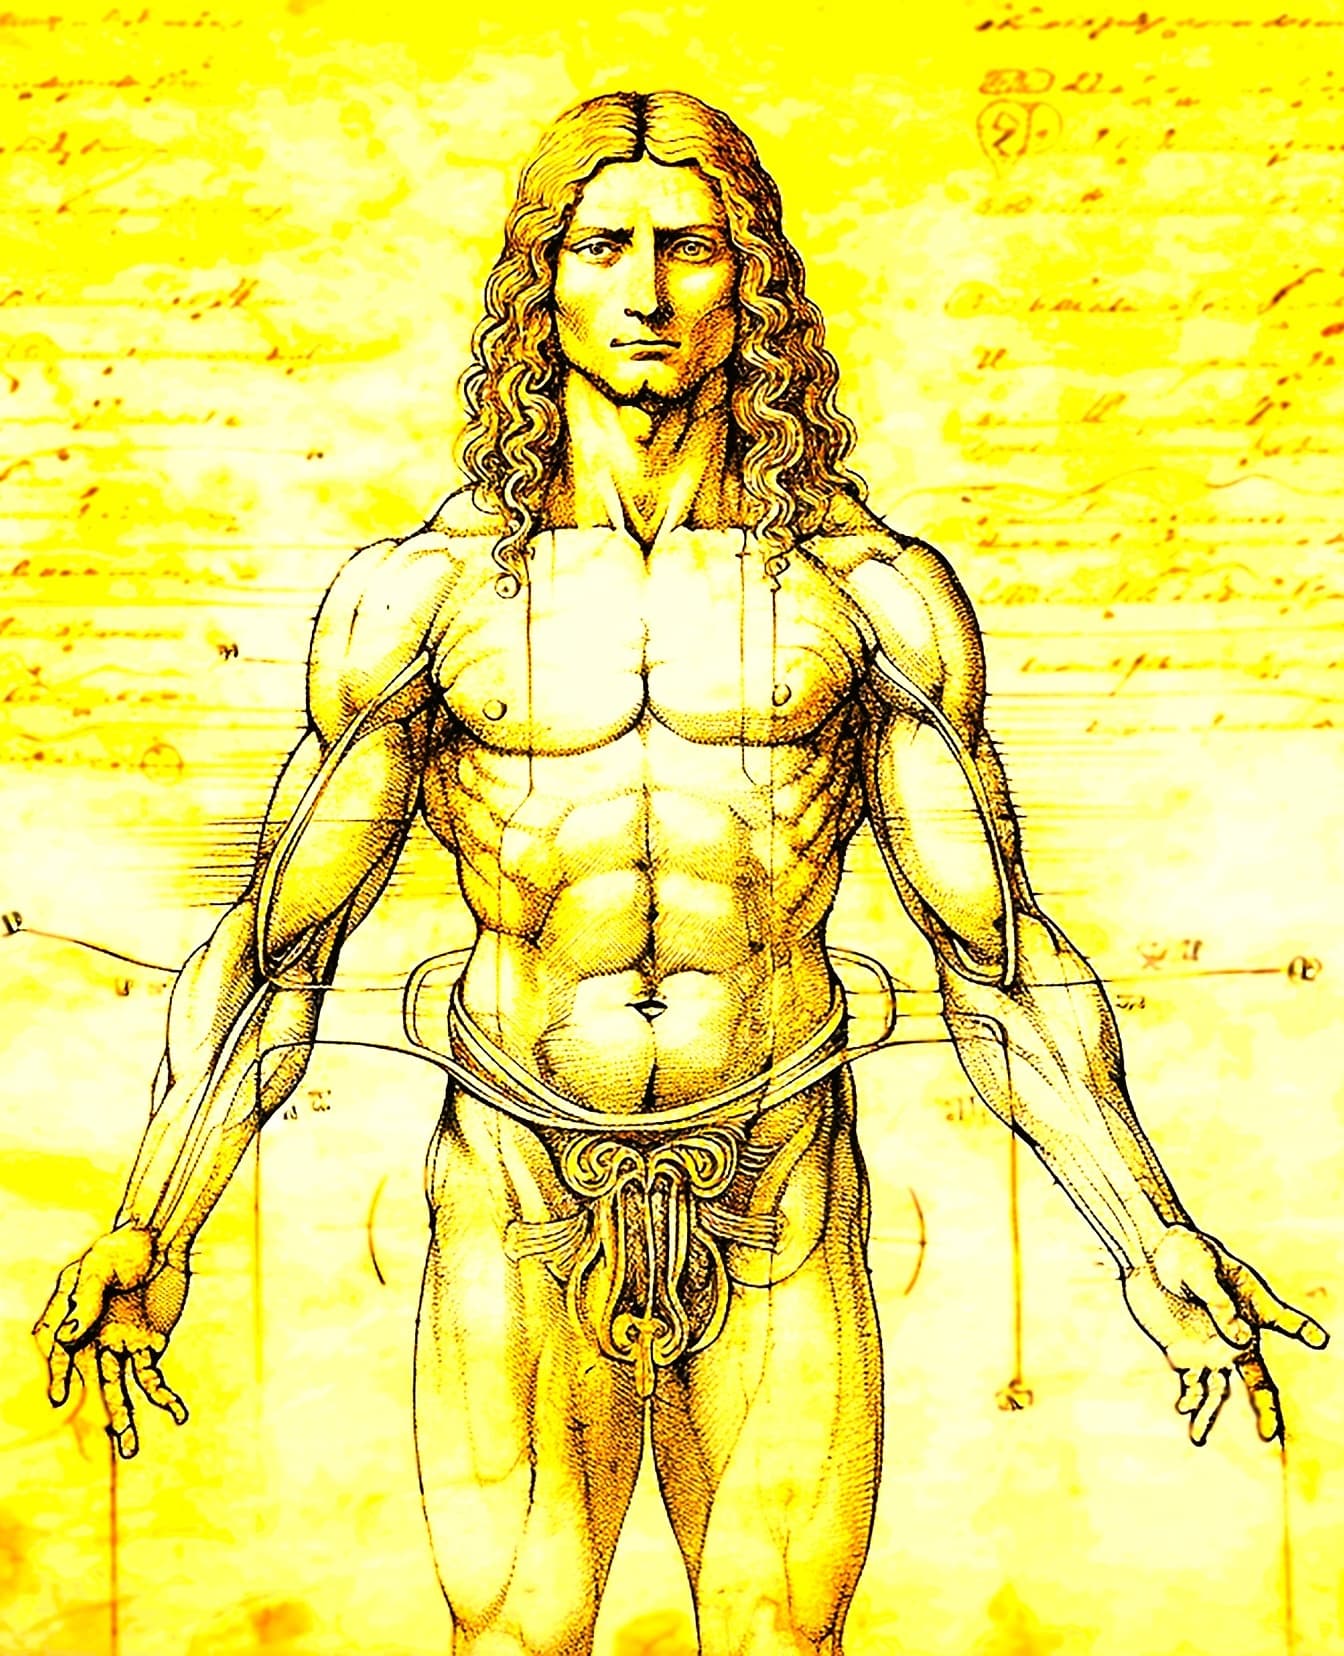 Ritning av anatomin hos en muskulös man, i en stil av den vitruvianska mannen av Leonardo da Vinci